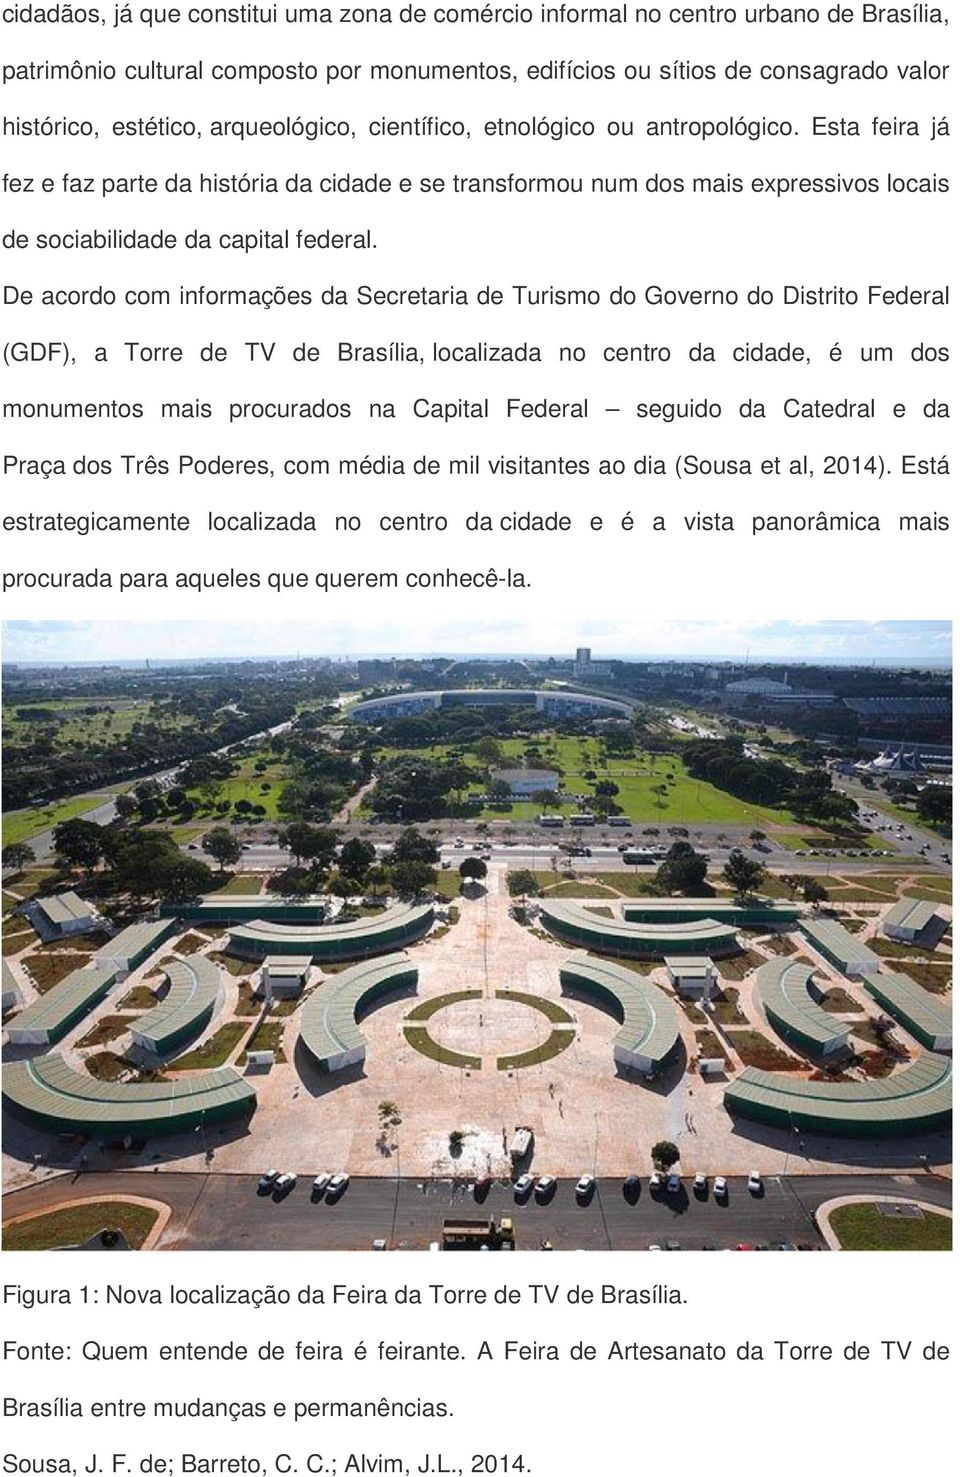 De acordo com informações da Secretaria de Turismo do Governo do Distrito Federal (GDF), a Torre de TV de Brasília, localizada no centro da cidade, é um dos monumentos mais procurados na Capital